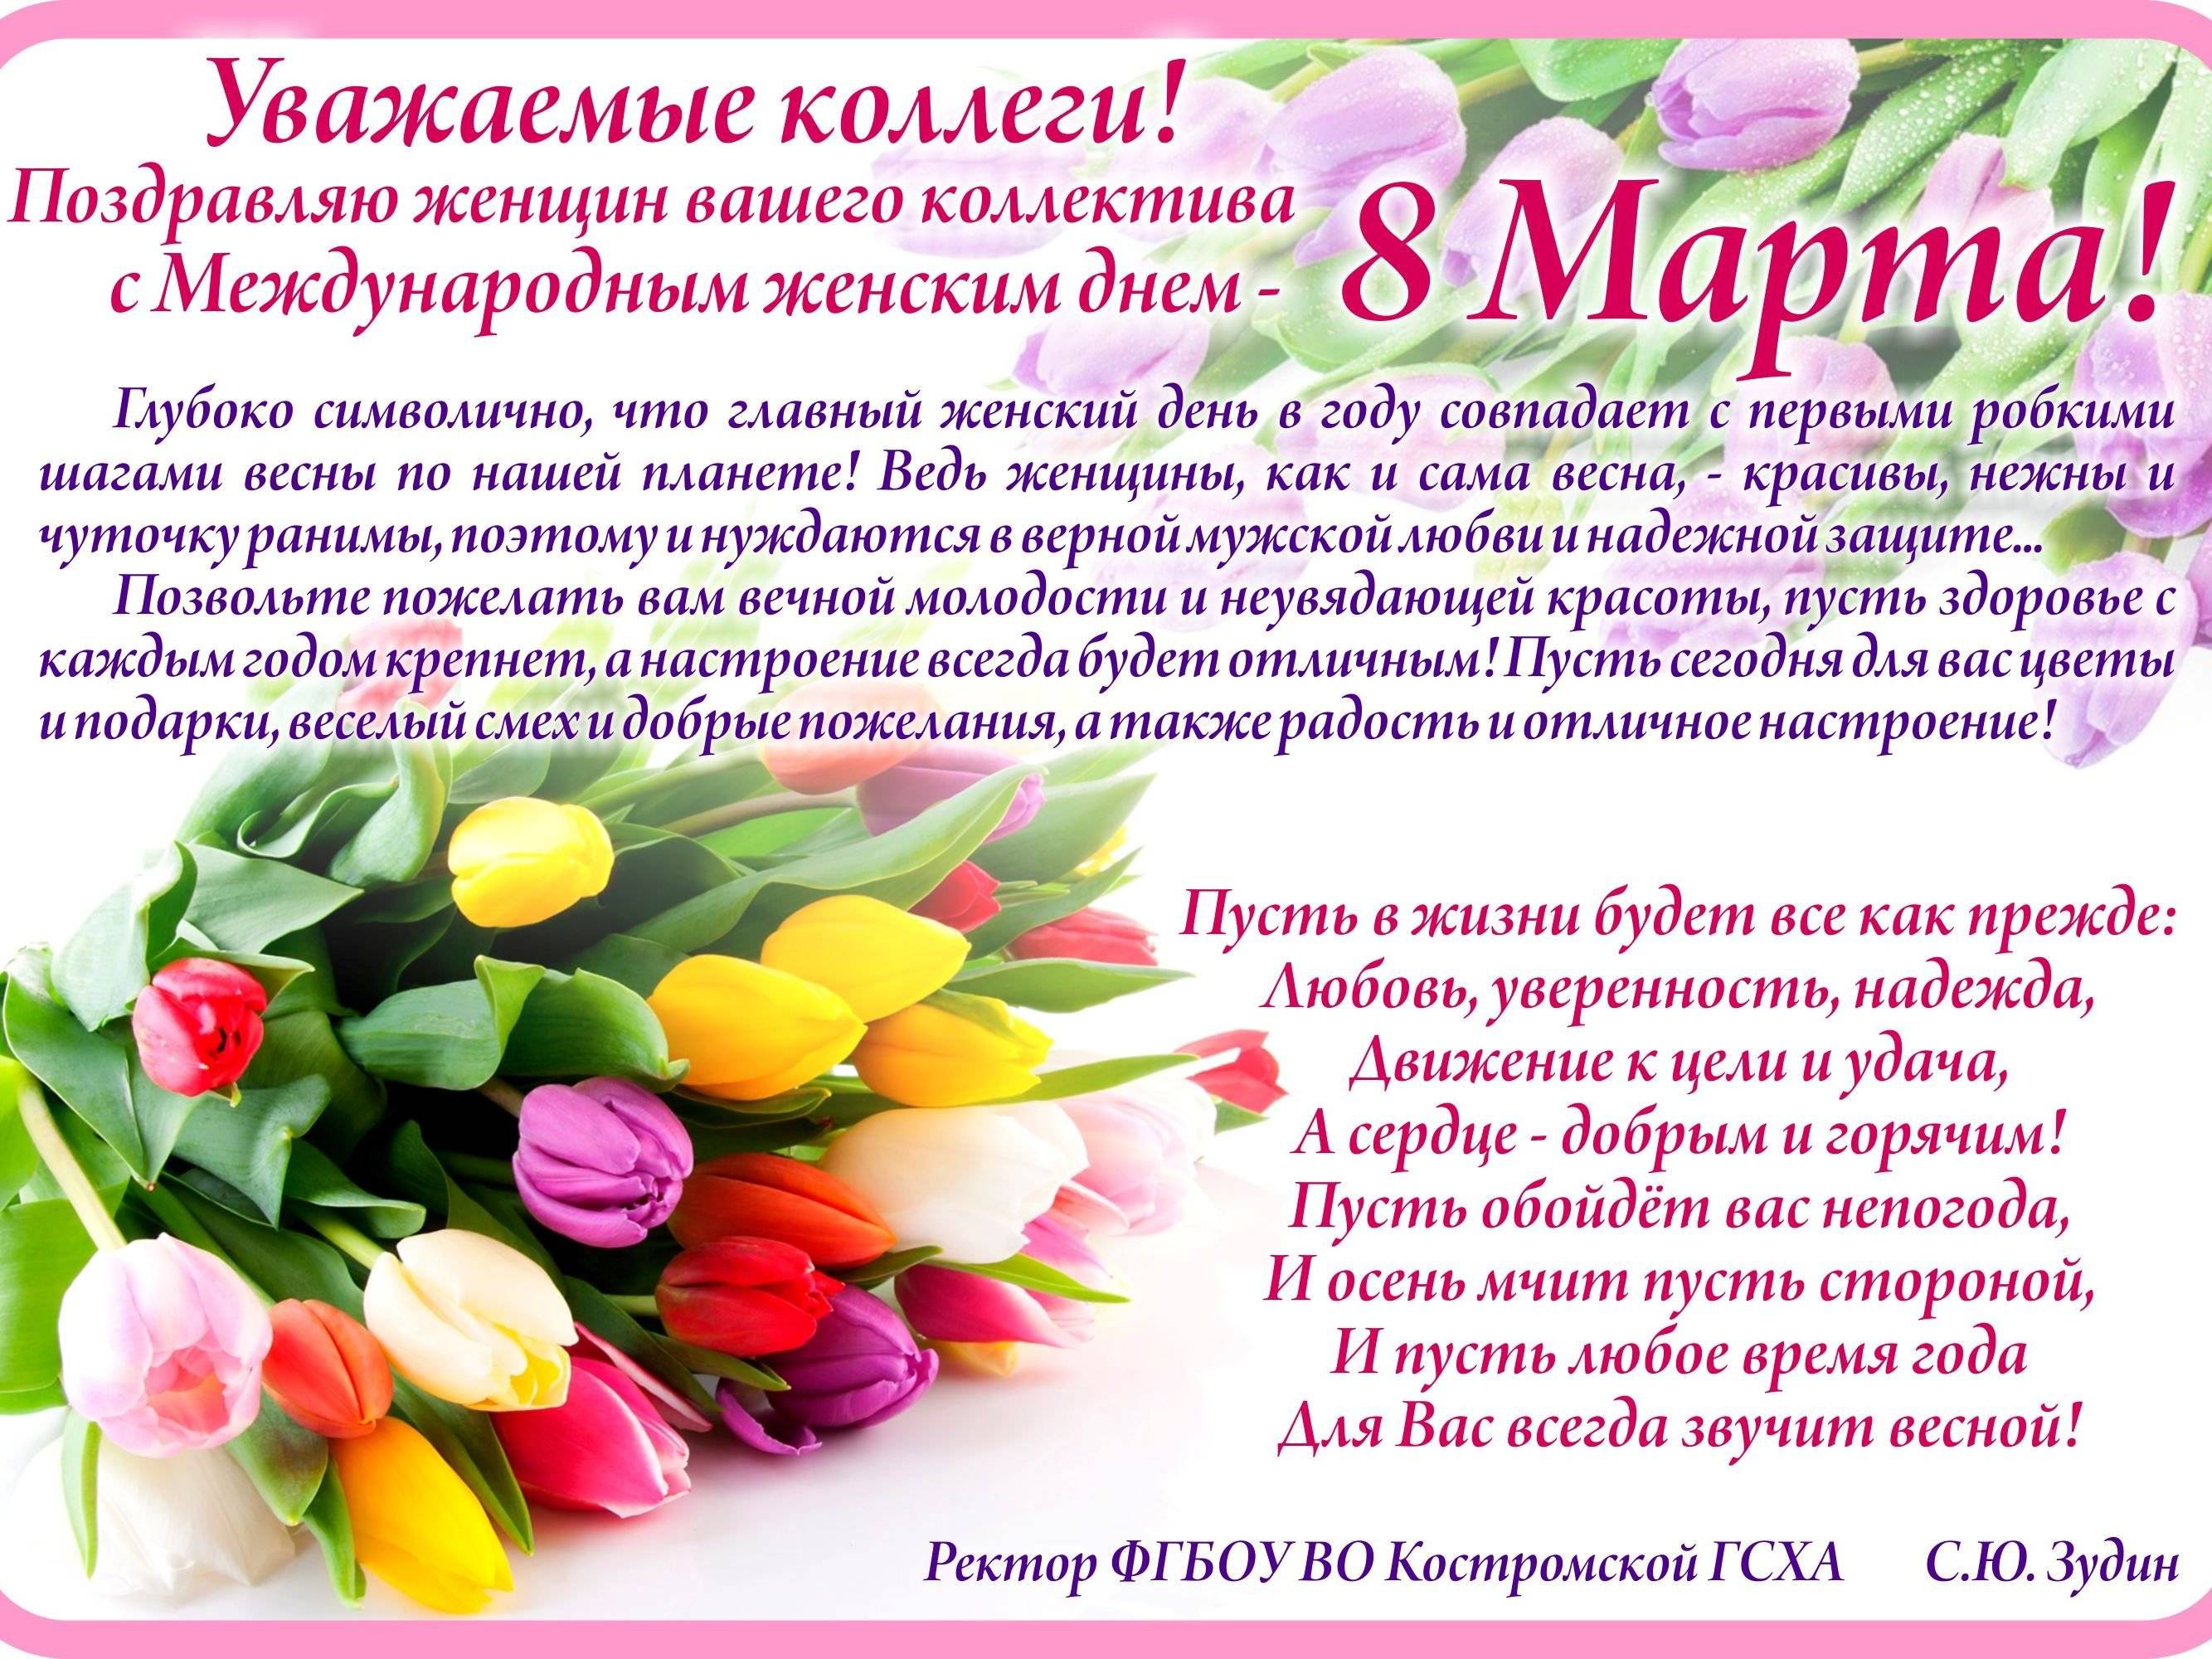 Поздравления с 8 марта. подборка красивых и прикольных пожеланий в стихах